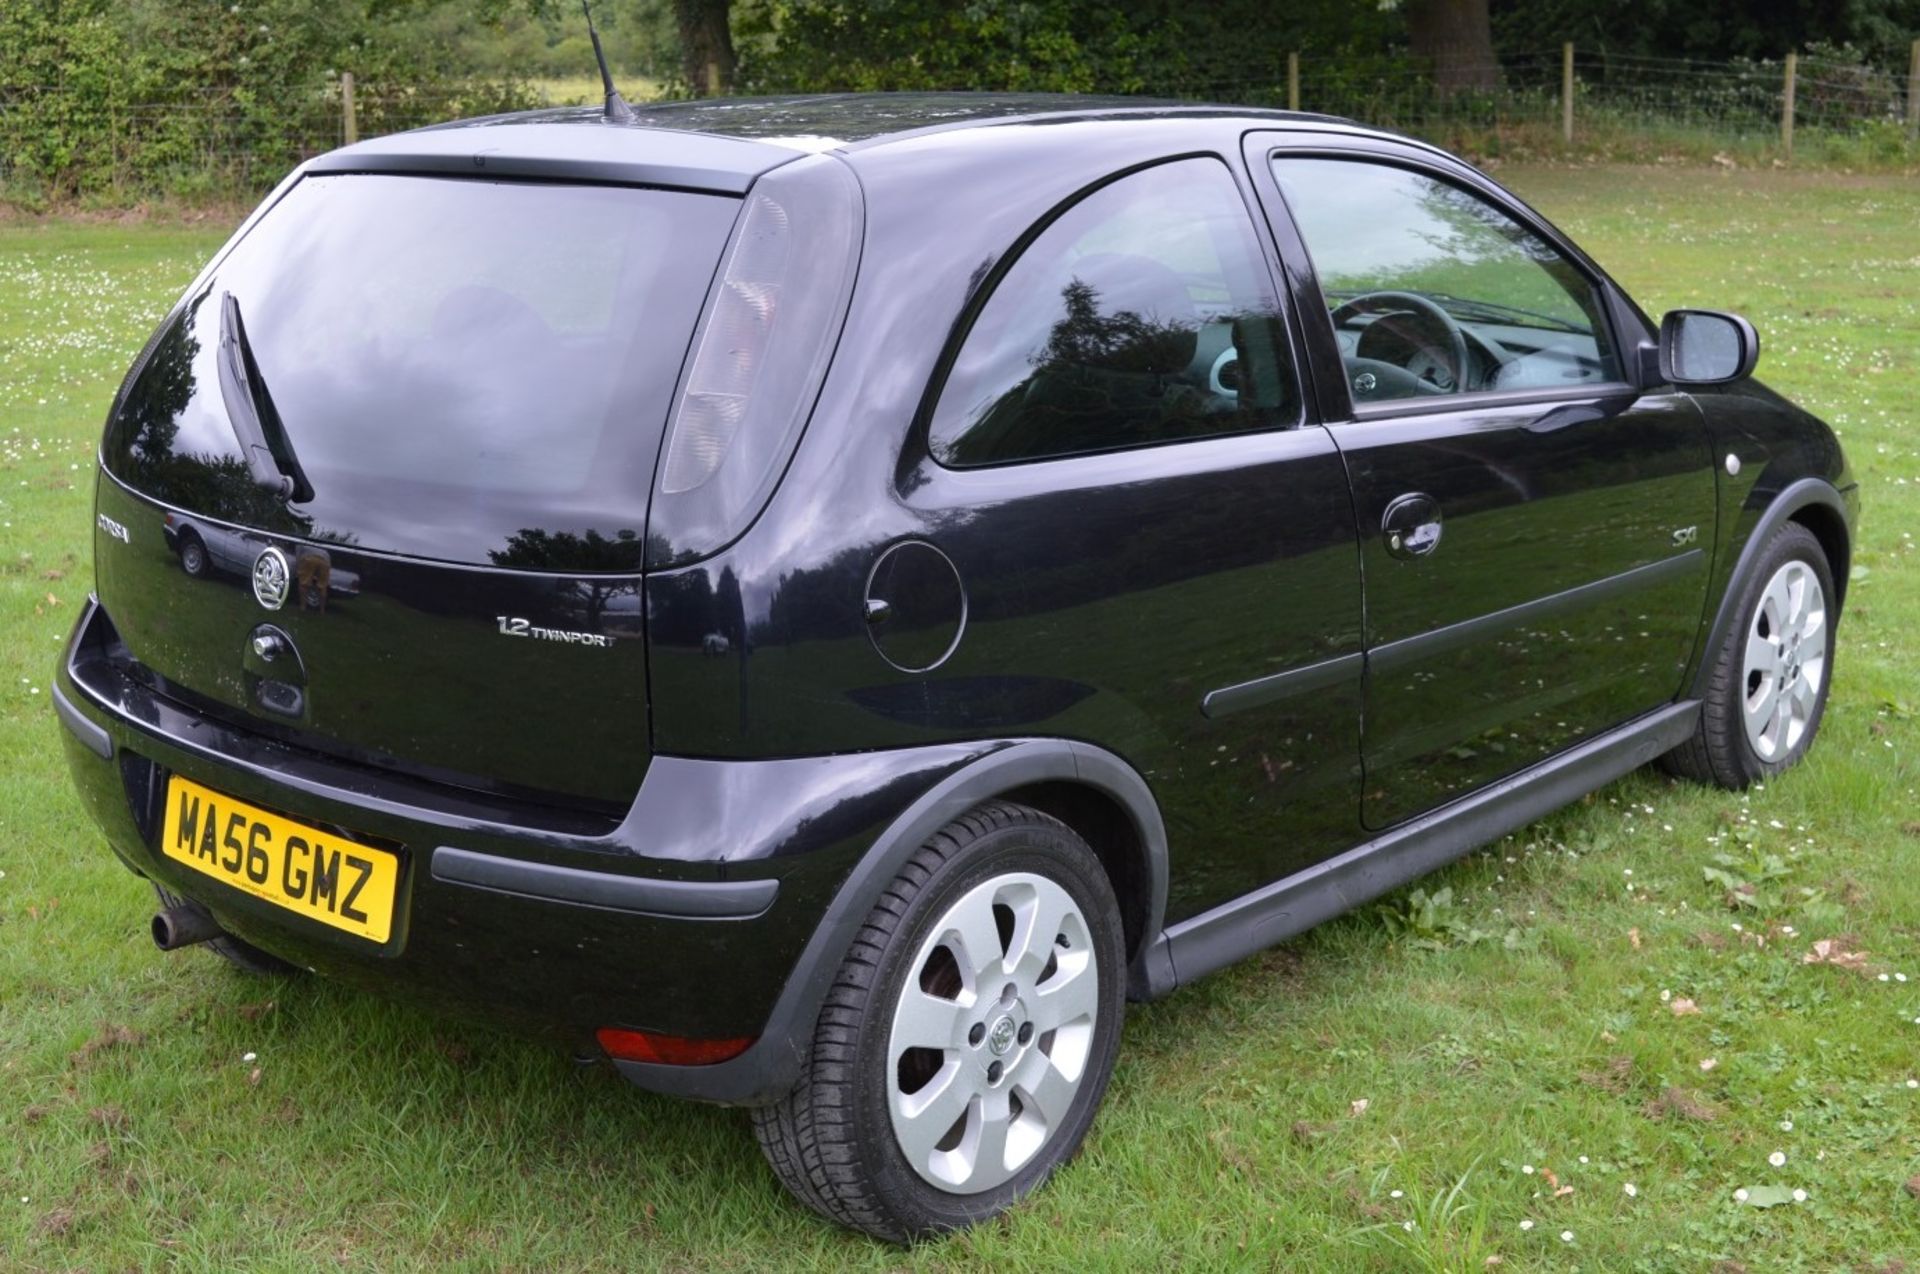 1 x Vauxhall Corsa SXI+ 3 Door Hatchback 1.2 - 2006 56 Plate - 78,000 Miles - MOT June 2018 - Image 3 of 36